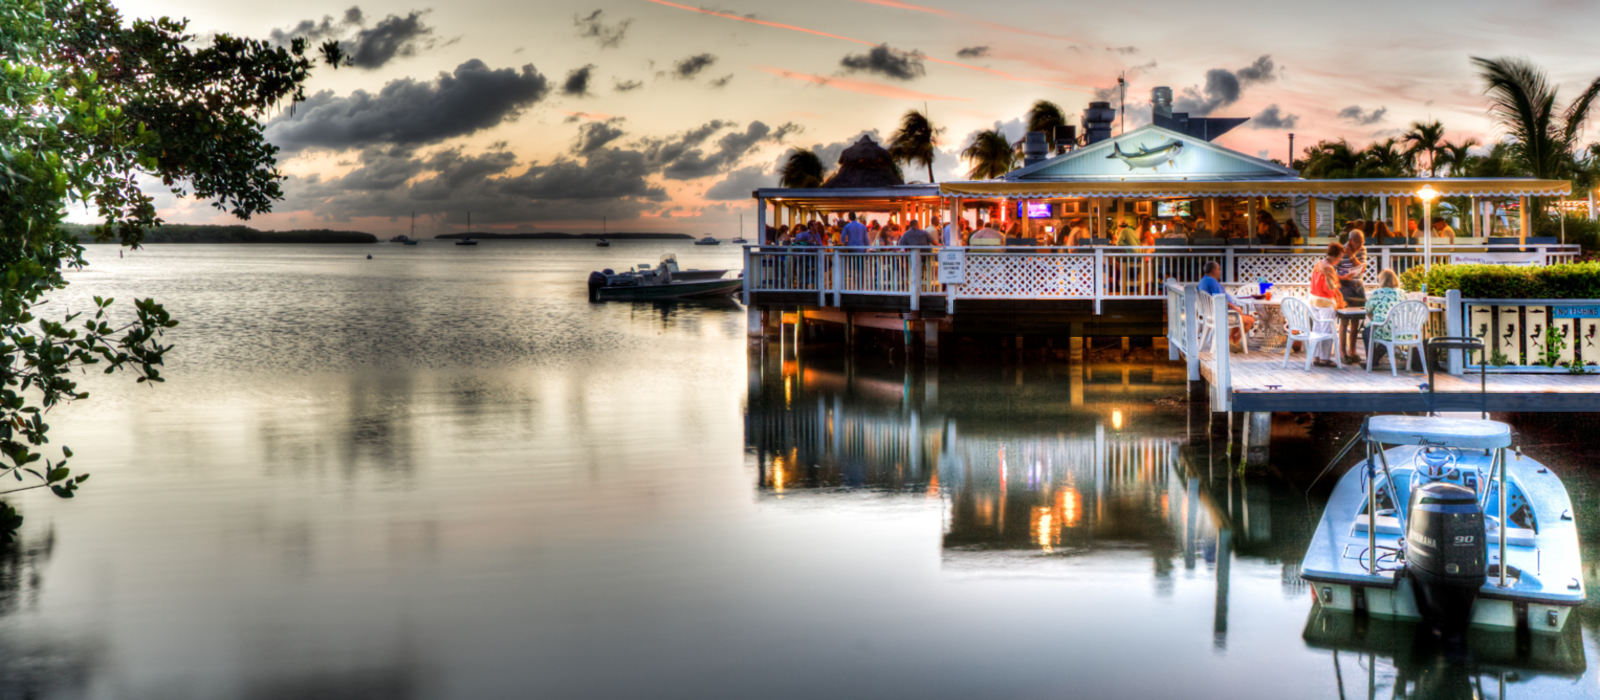 Islamorada Yacht Basin Lorelei Restaurant in Islamorada, FL